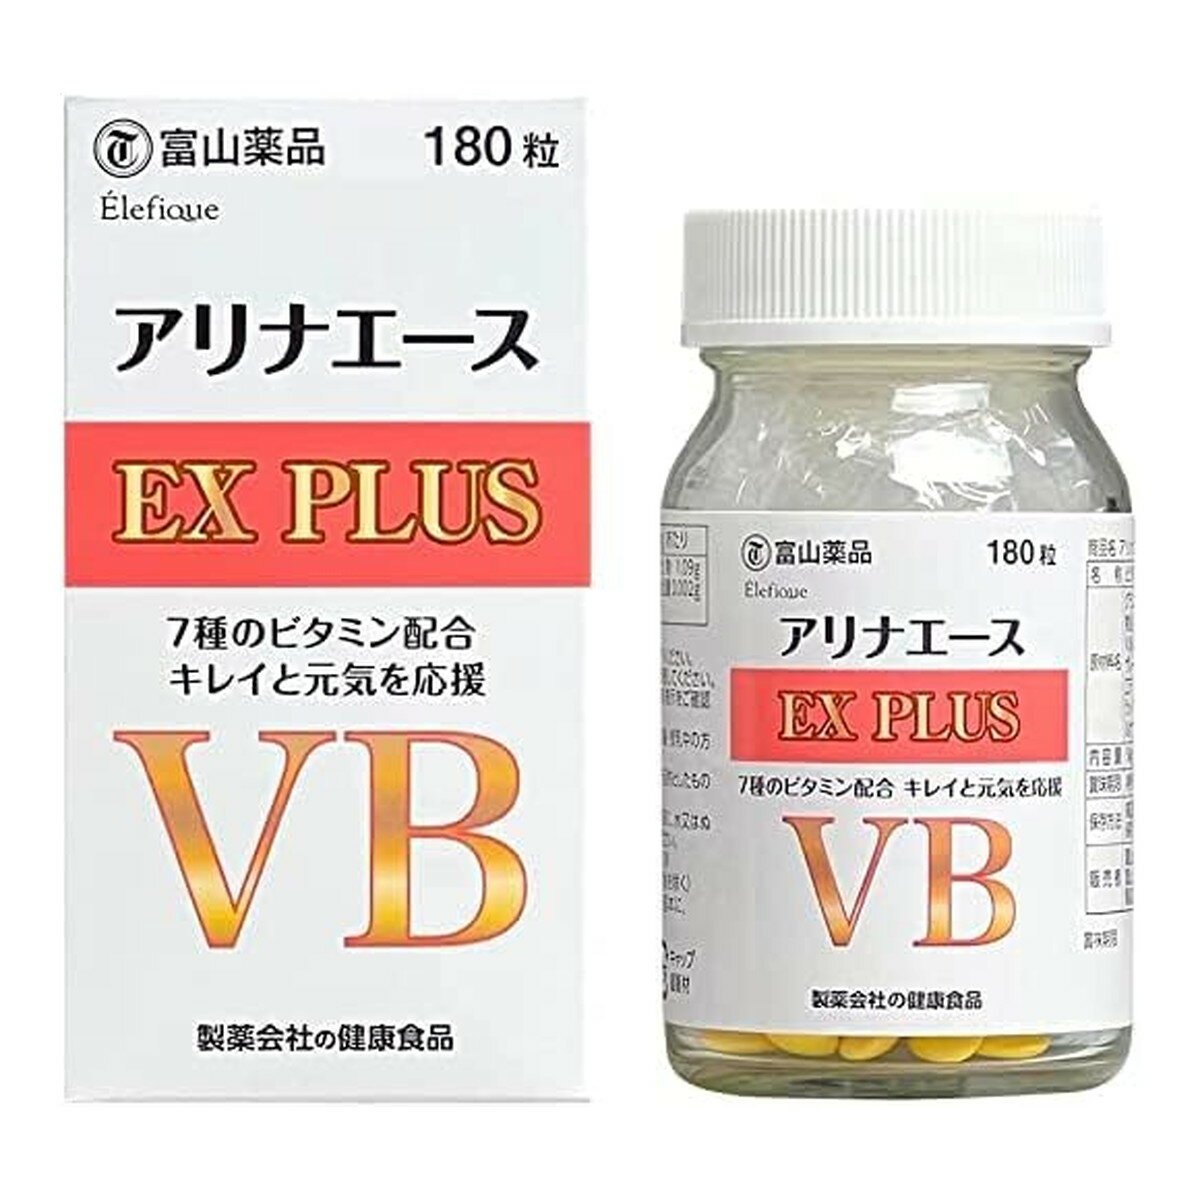 ビタミン サプリ サプリメント 富山薬品 富山健康 アリナエースEX PLUS VB 日本製 ビタミンB 7種のビタミン配合 (30日分) vitamin ビタミンサプリ